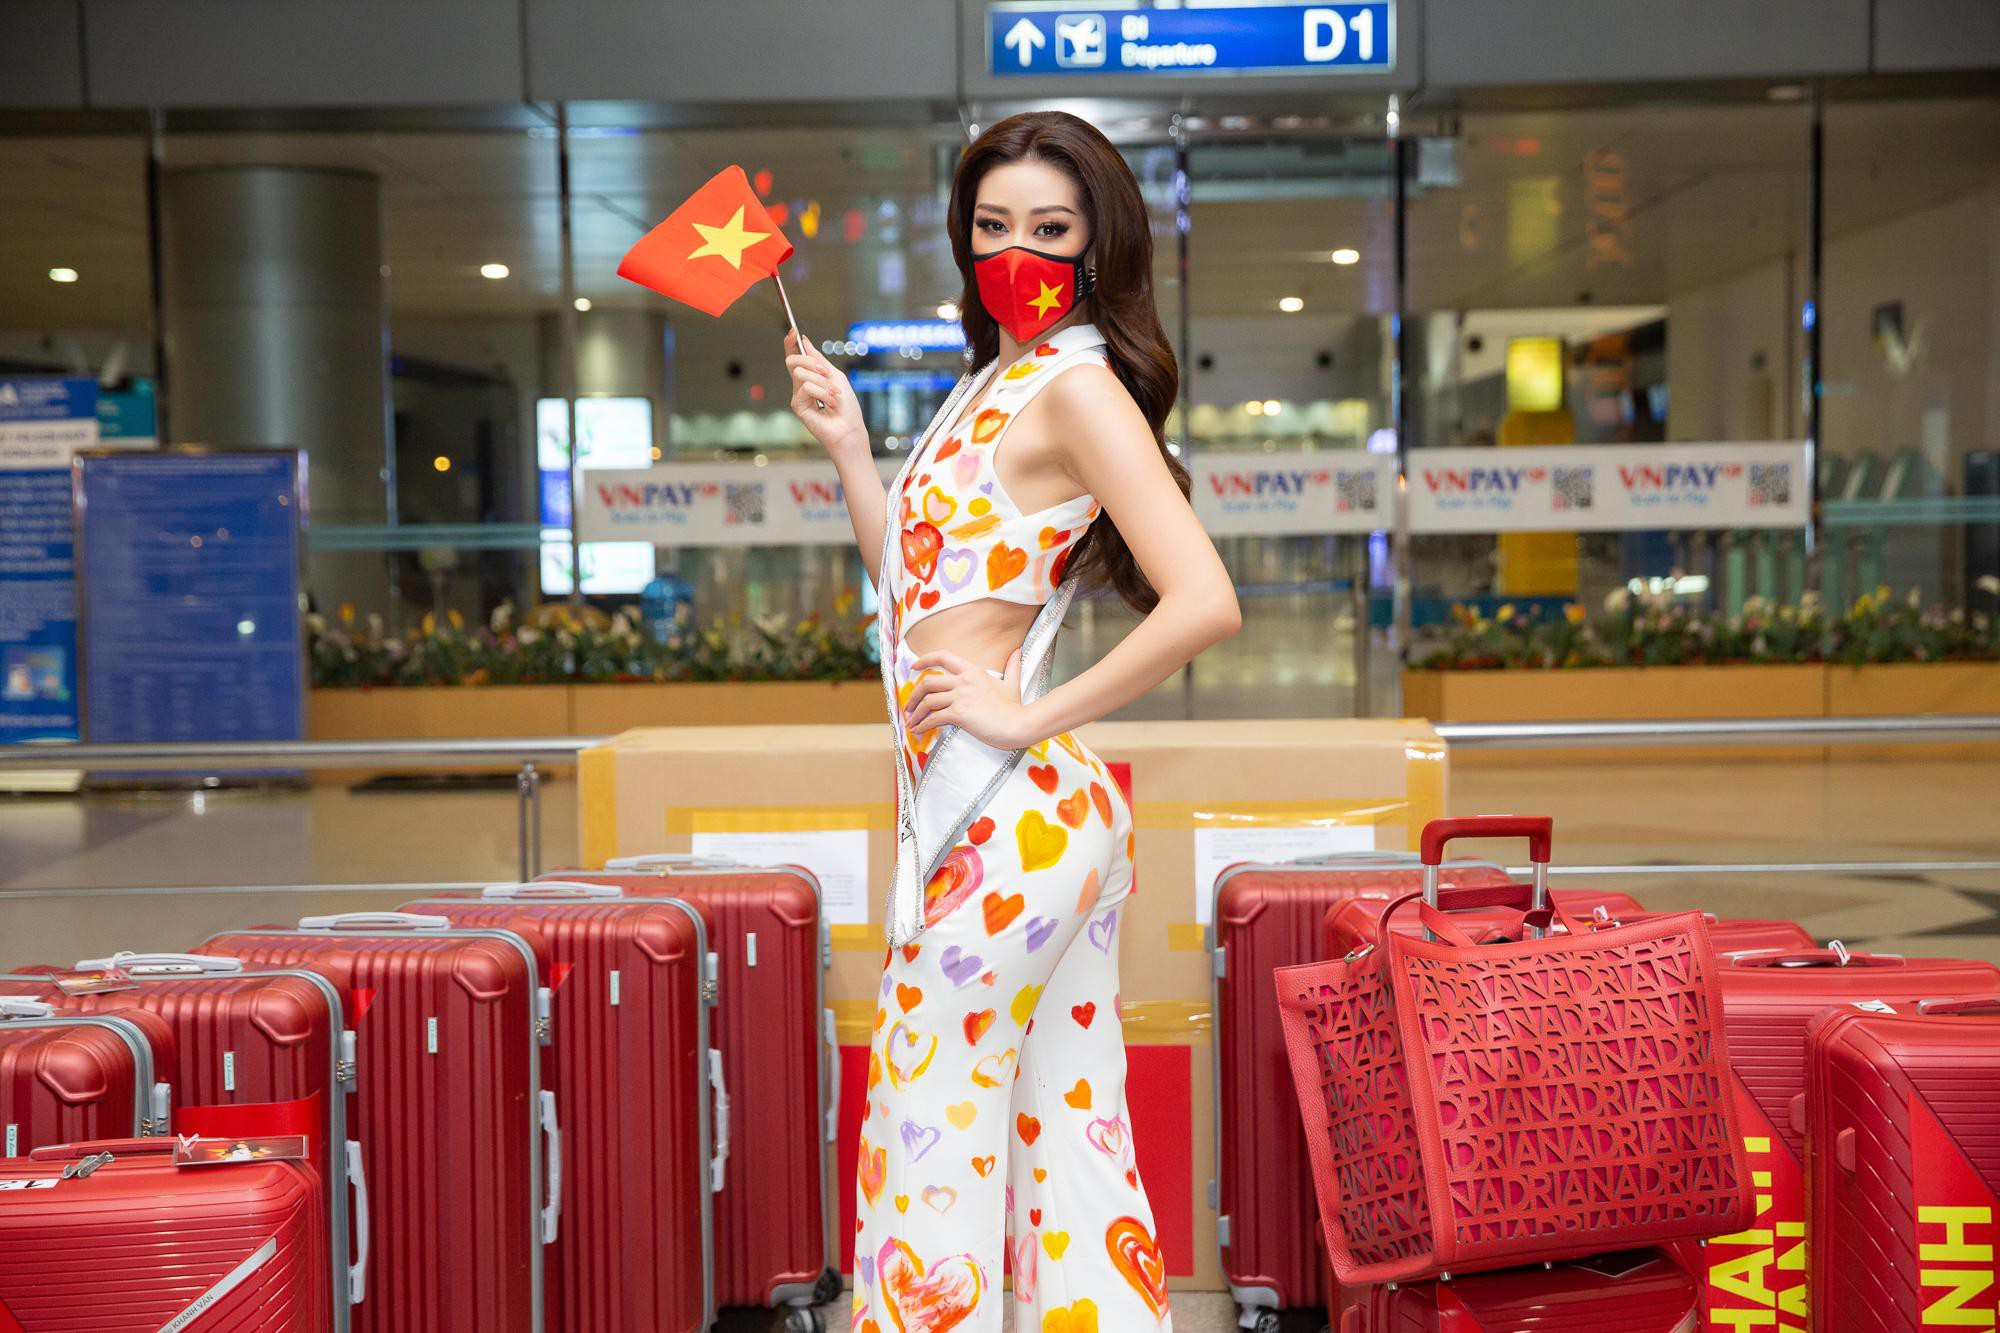 Hoa hậu Khánh Vân liên tục biến hóa phong cách thời trang sân bay khi lên đường sang Mỹ dự thi Miss Universe 2020 - Ảnh 6.